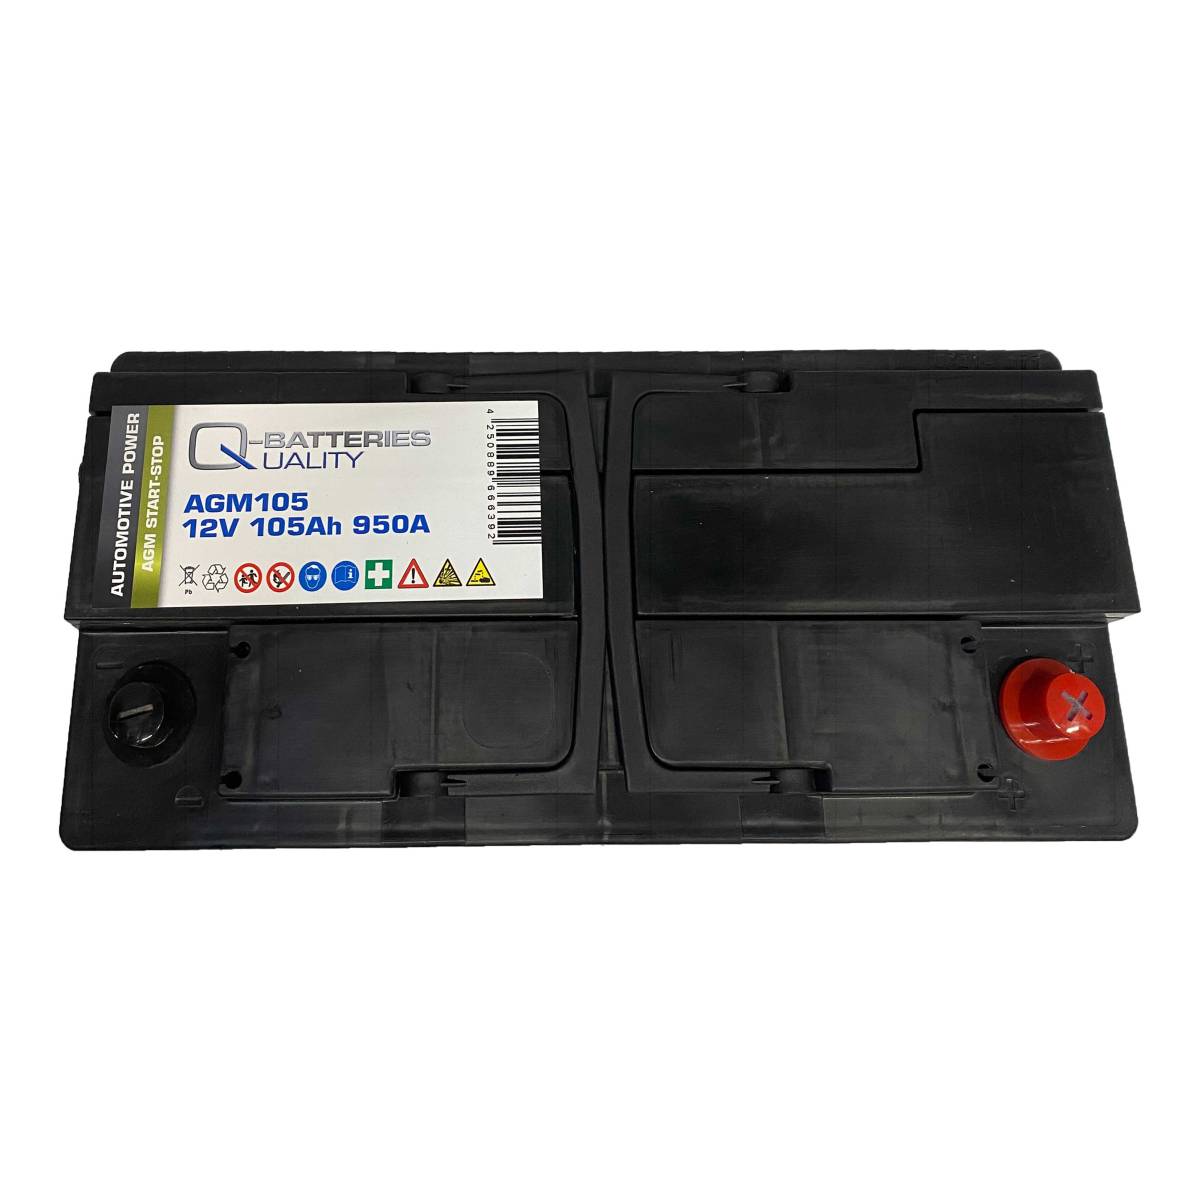 Q-Batteries Start-Stop Autobatterie AGM105 12V 105Ah 950A